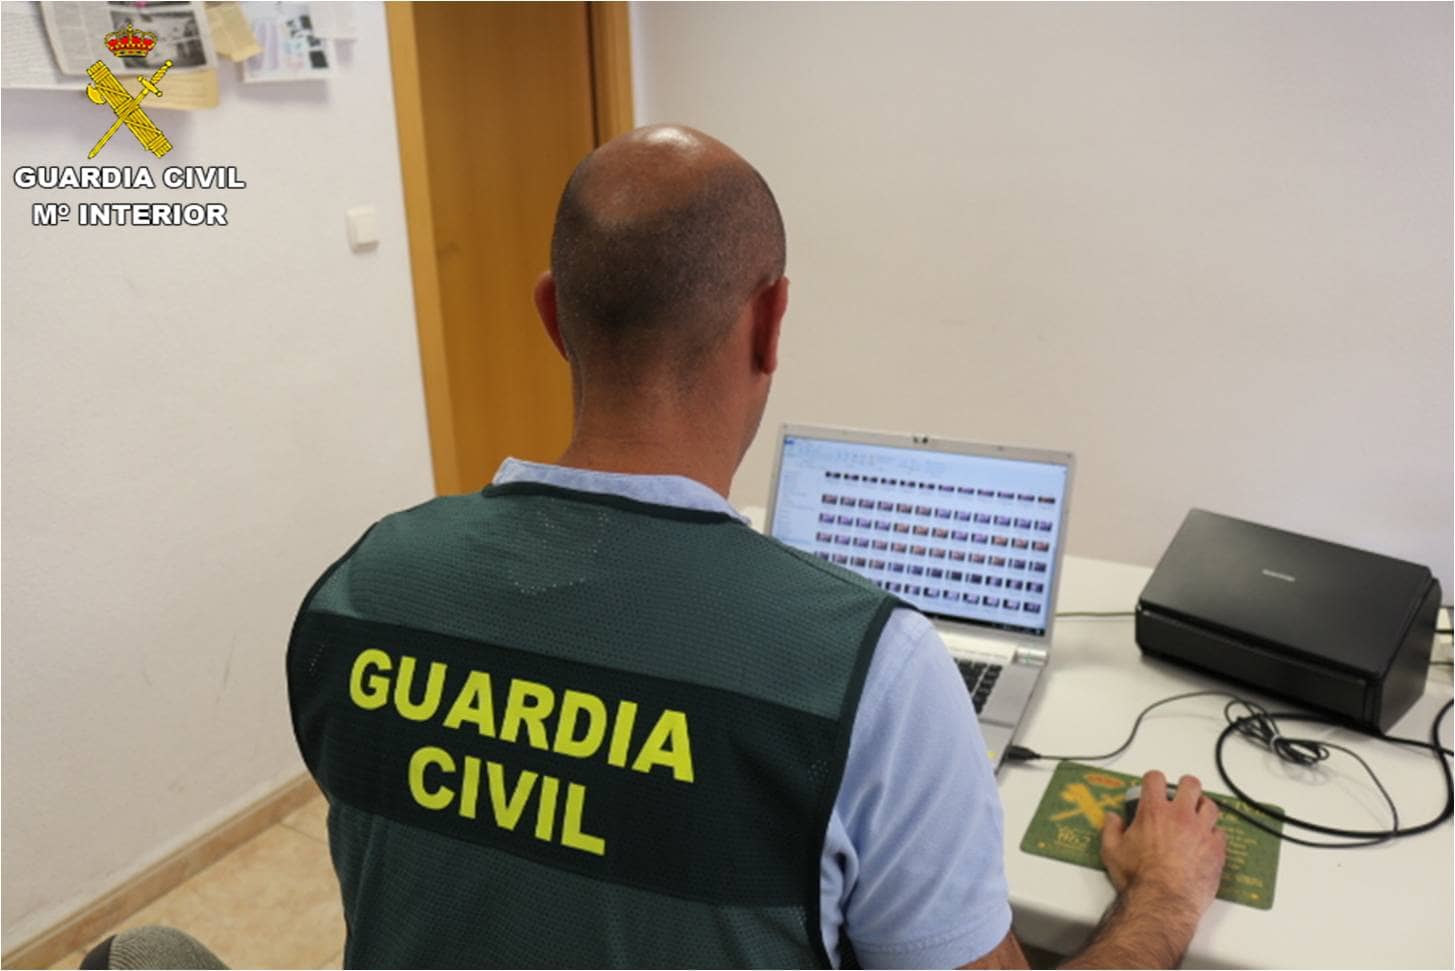 La Guardia Civil detiene a un joven en Villena por solicitar imágenes sexuales a 10 menores